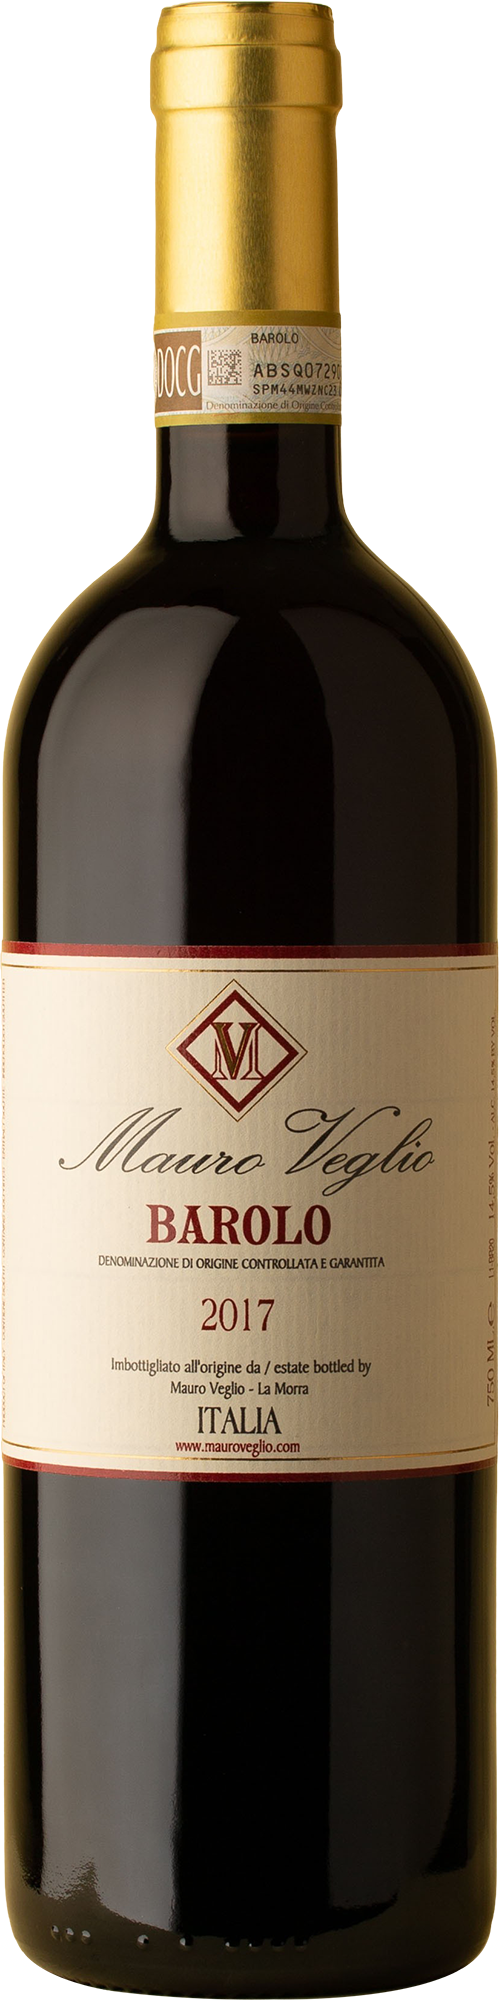 Mauro Veglio - Barolo Nebbiolo 2017 Red Wine